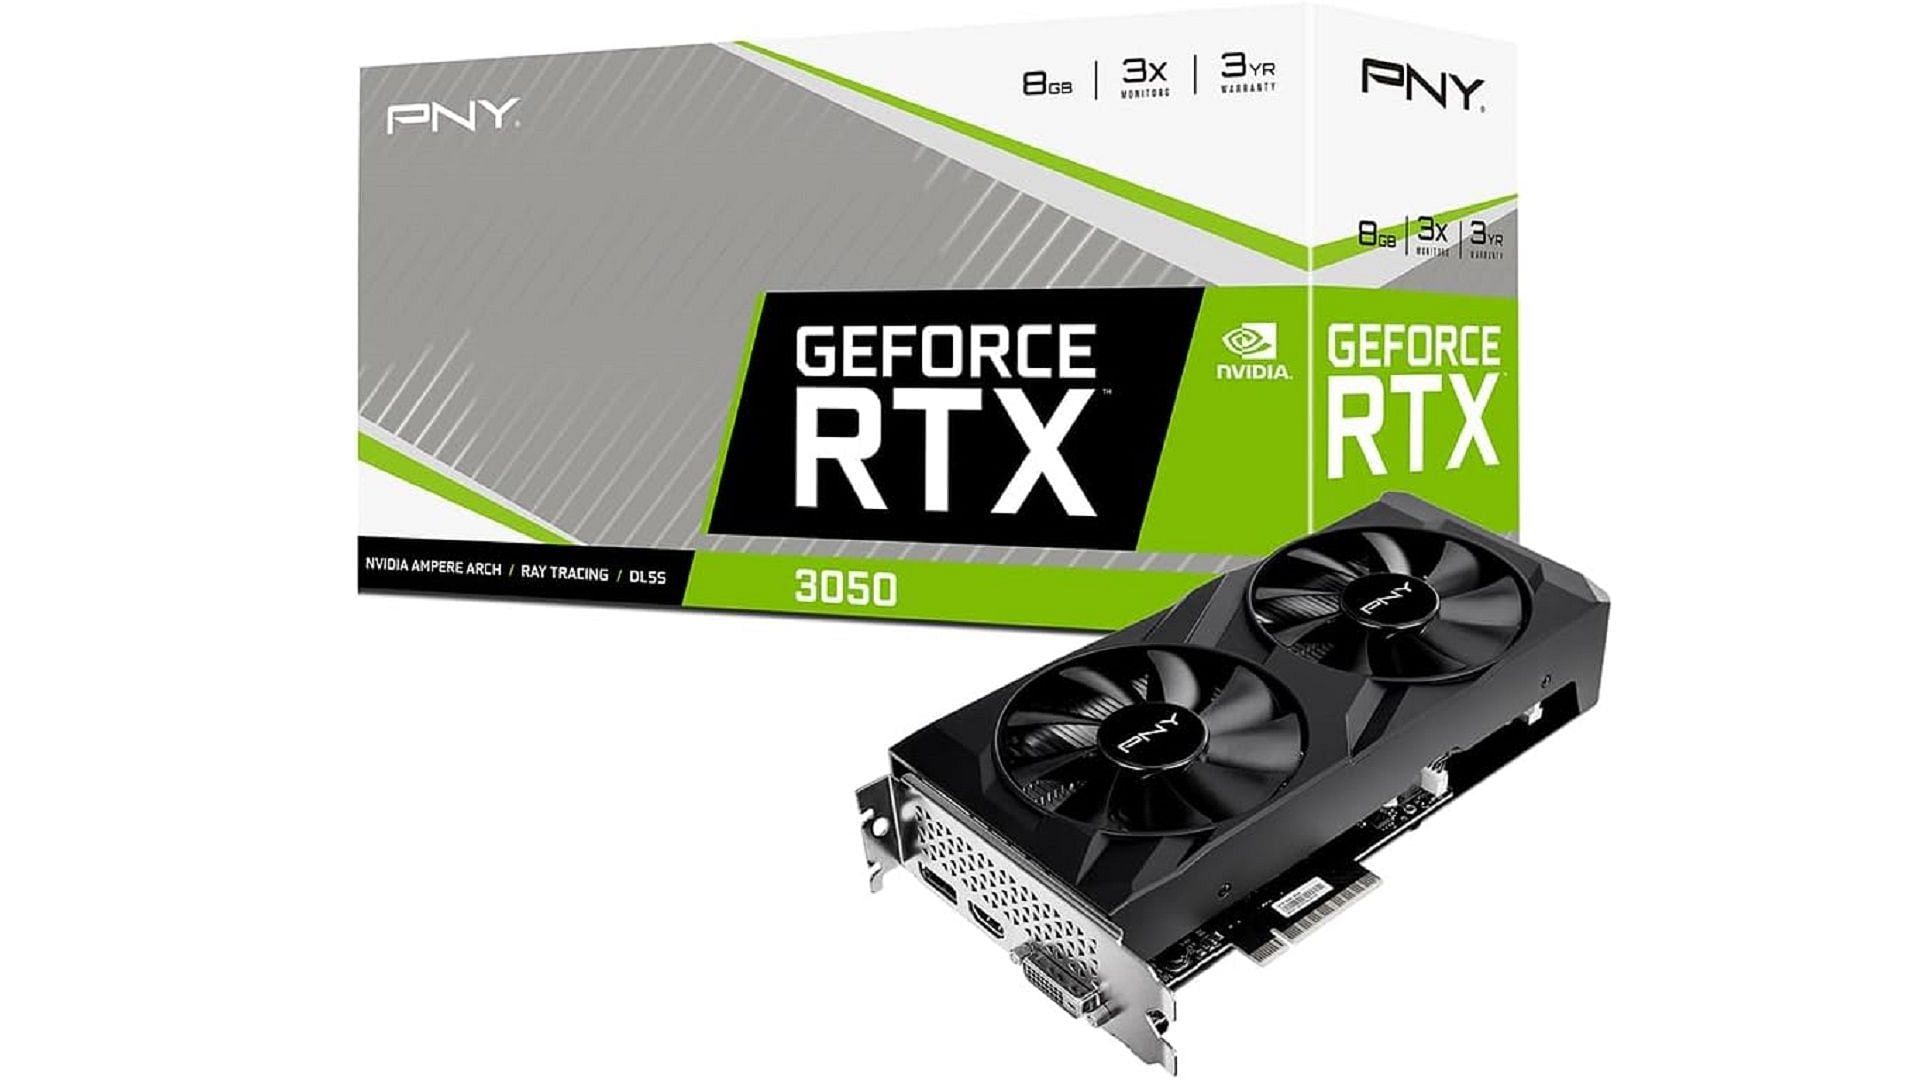 PNY GeForce RTX&trade; 3050 8GB Graphics Card (Image via PNY/Nvidia)